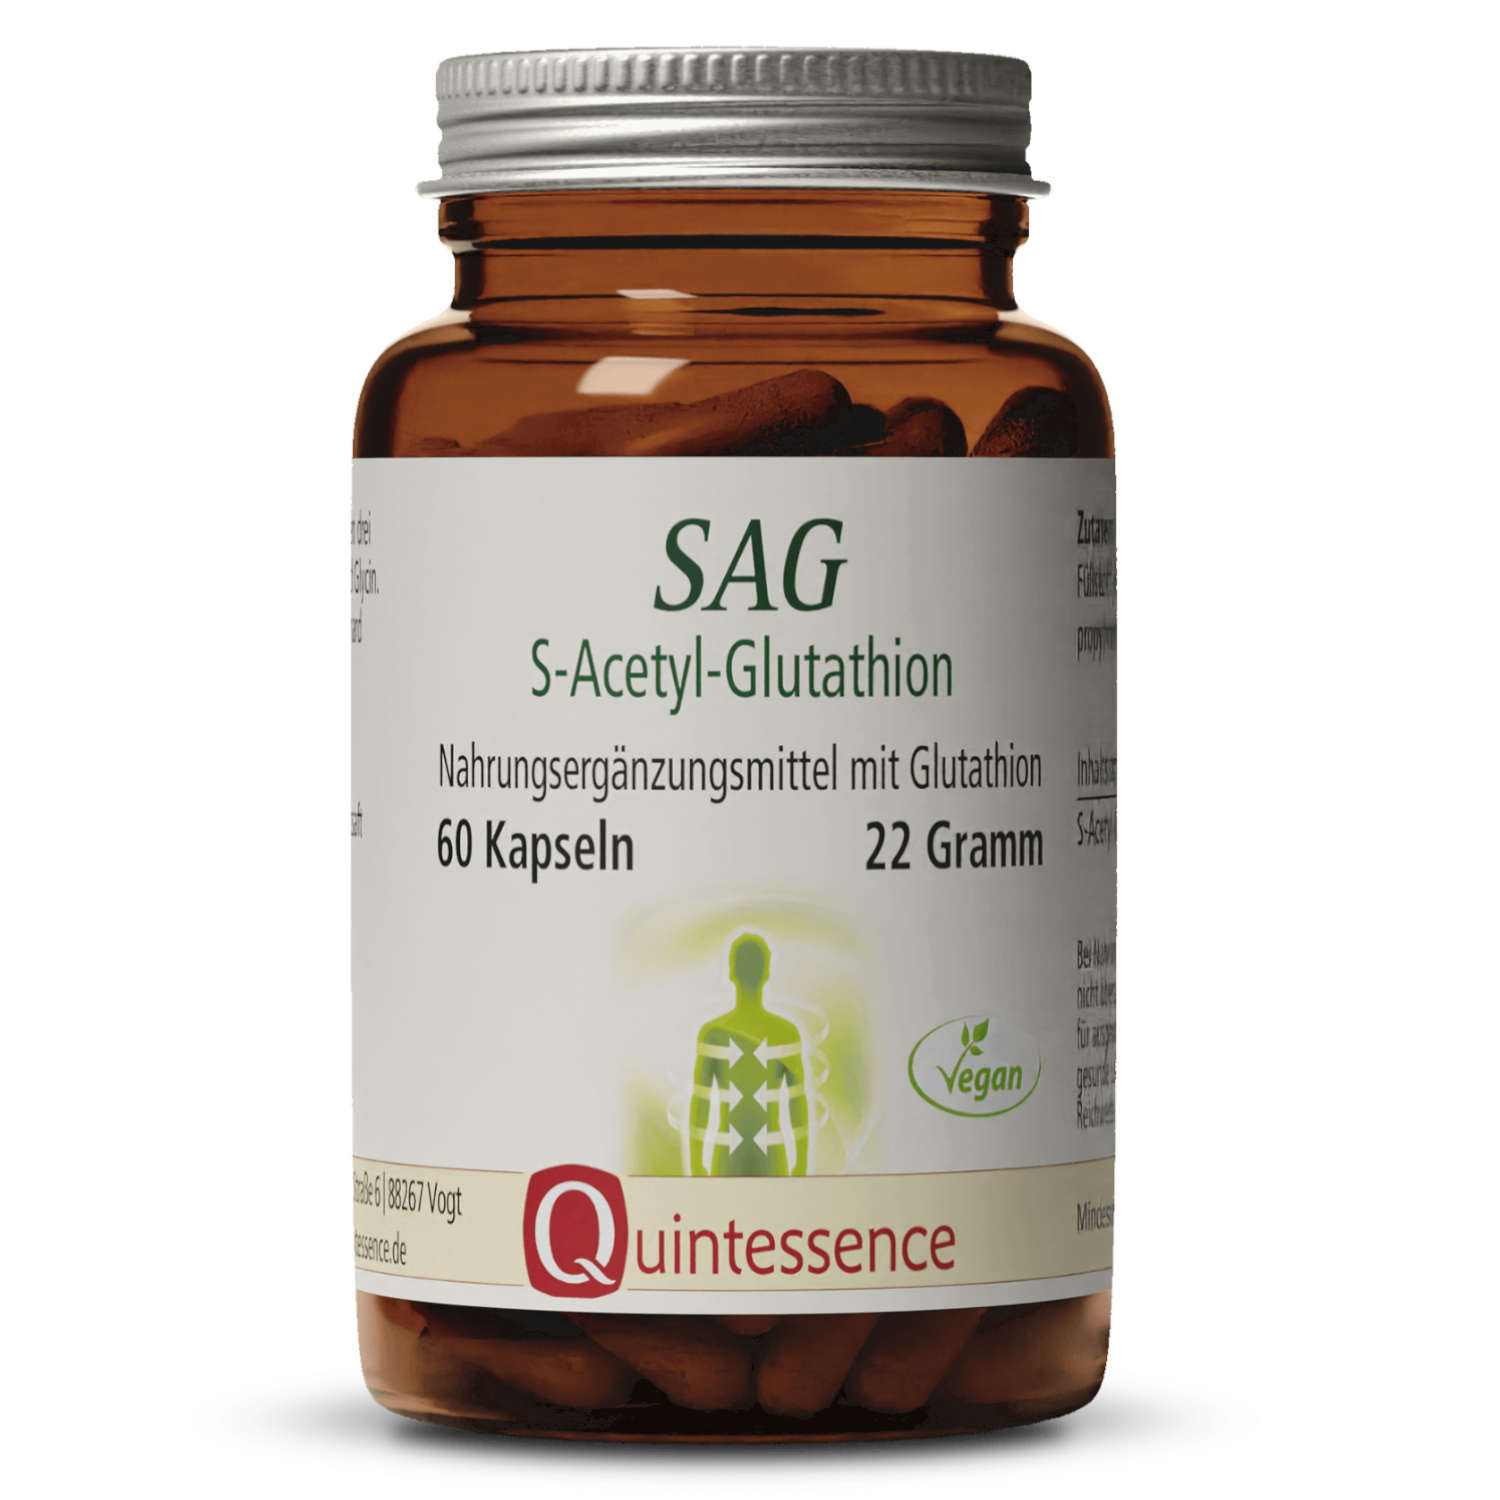 SAG - S-Acetyl Glutathion von Quintessence - 60 Kapseln